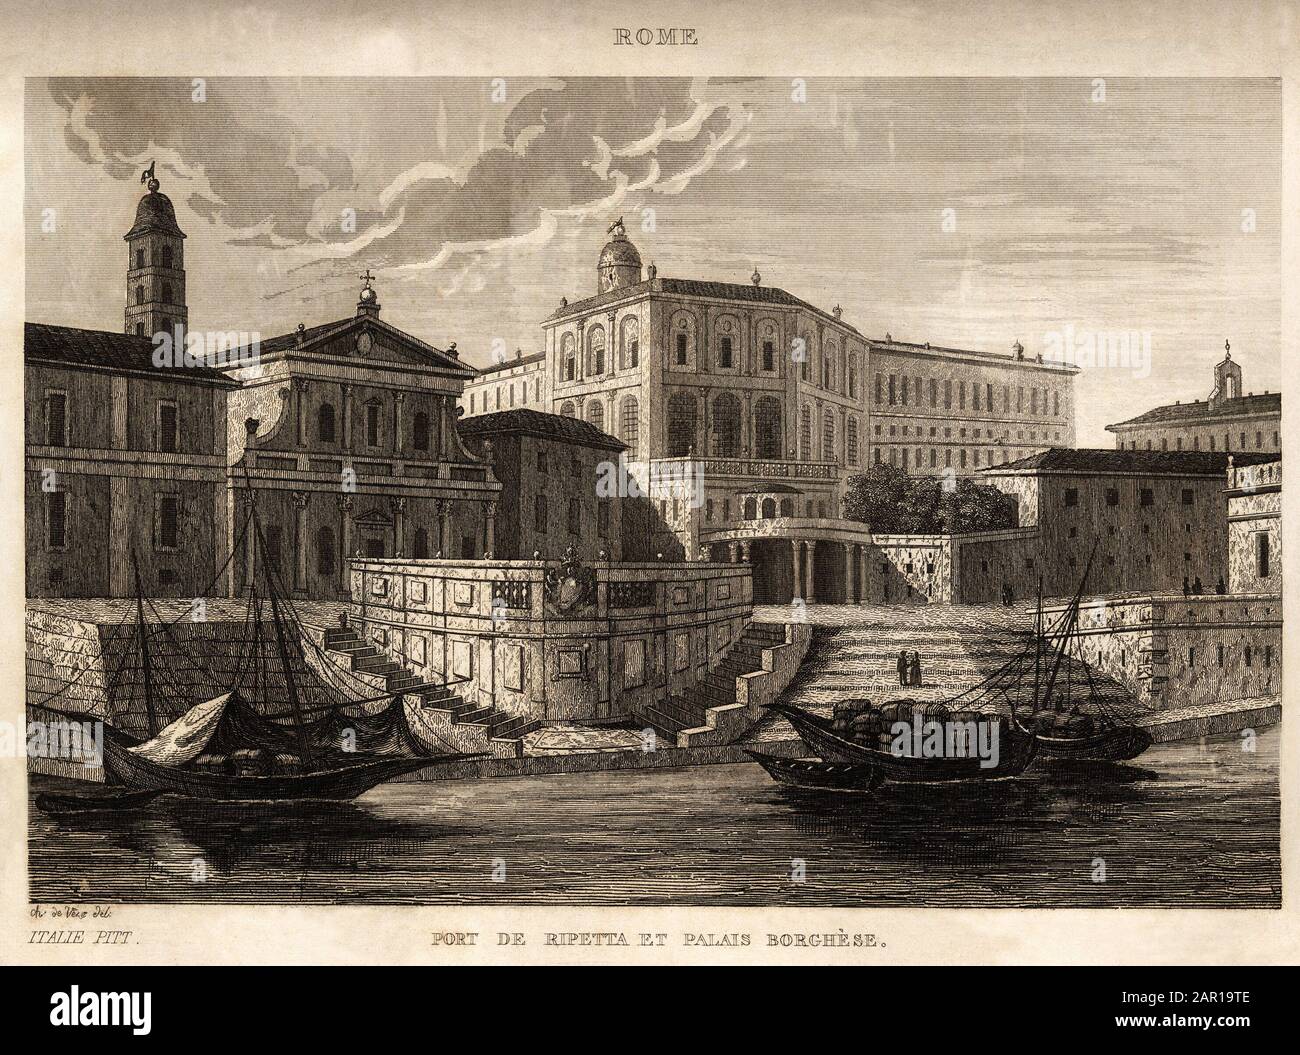 Le port de Ripetta et le palais Borghese a Rome, gravure de Ch. de Vene, in 'Italie pittoresque', Amable Coste editeur, Paris, 1836. Collection Leonar Stock Photo